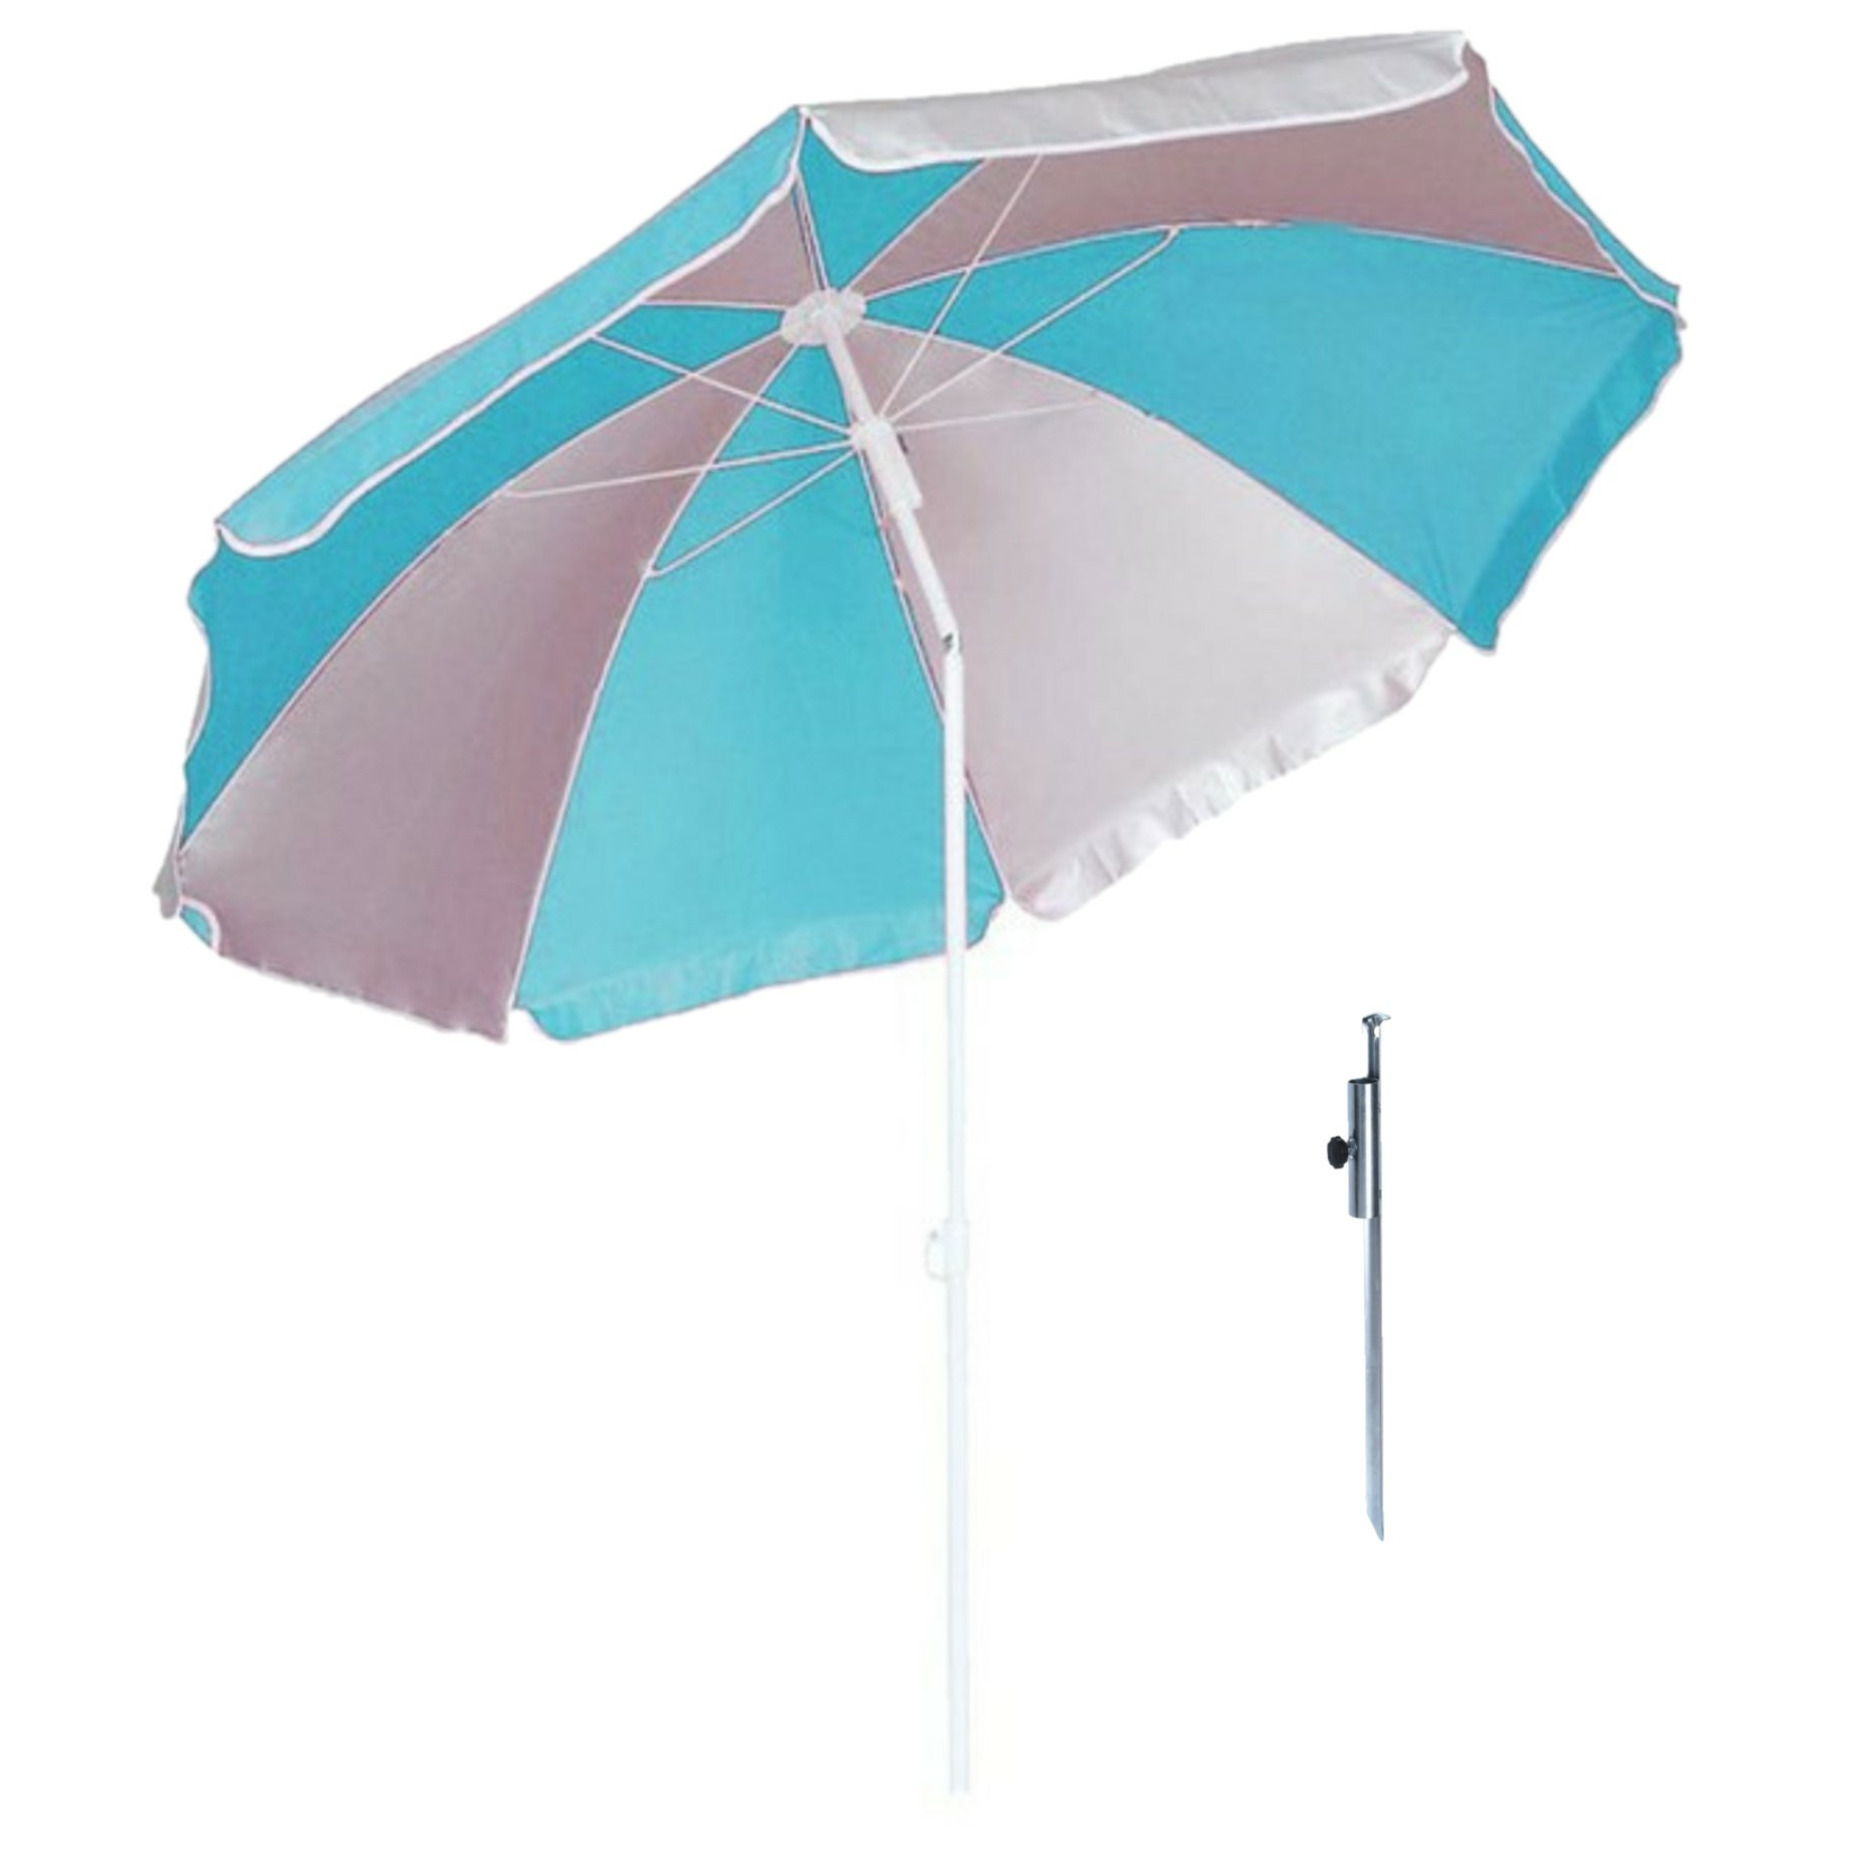 Parasol Blauw-wit D120 cm incl. draagtas parasolharing 49 cm